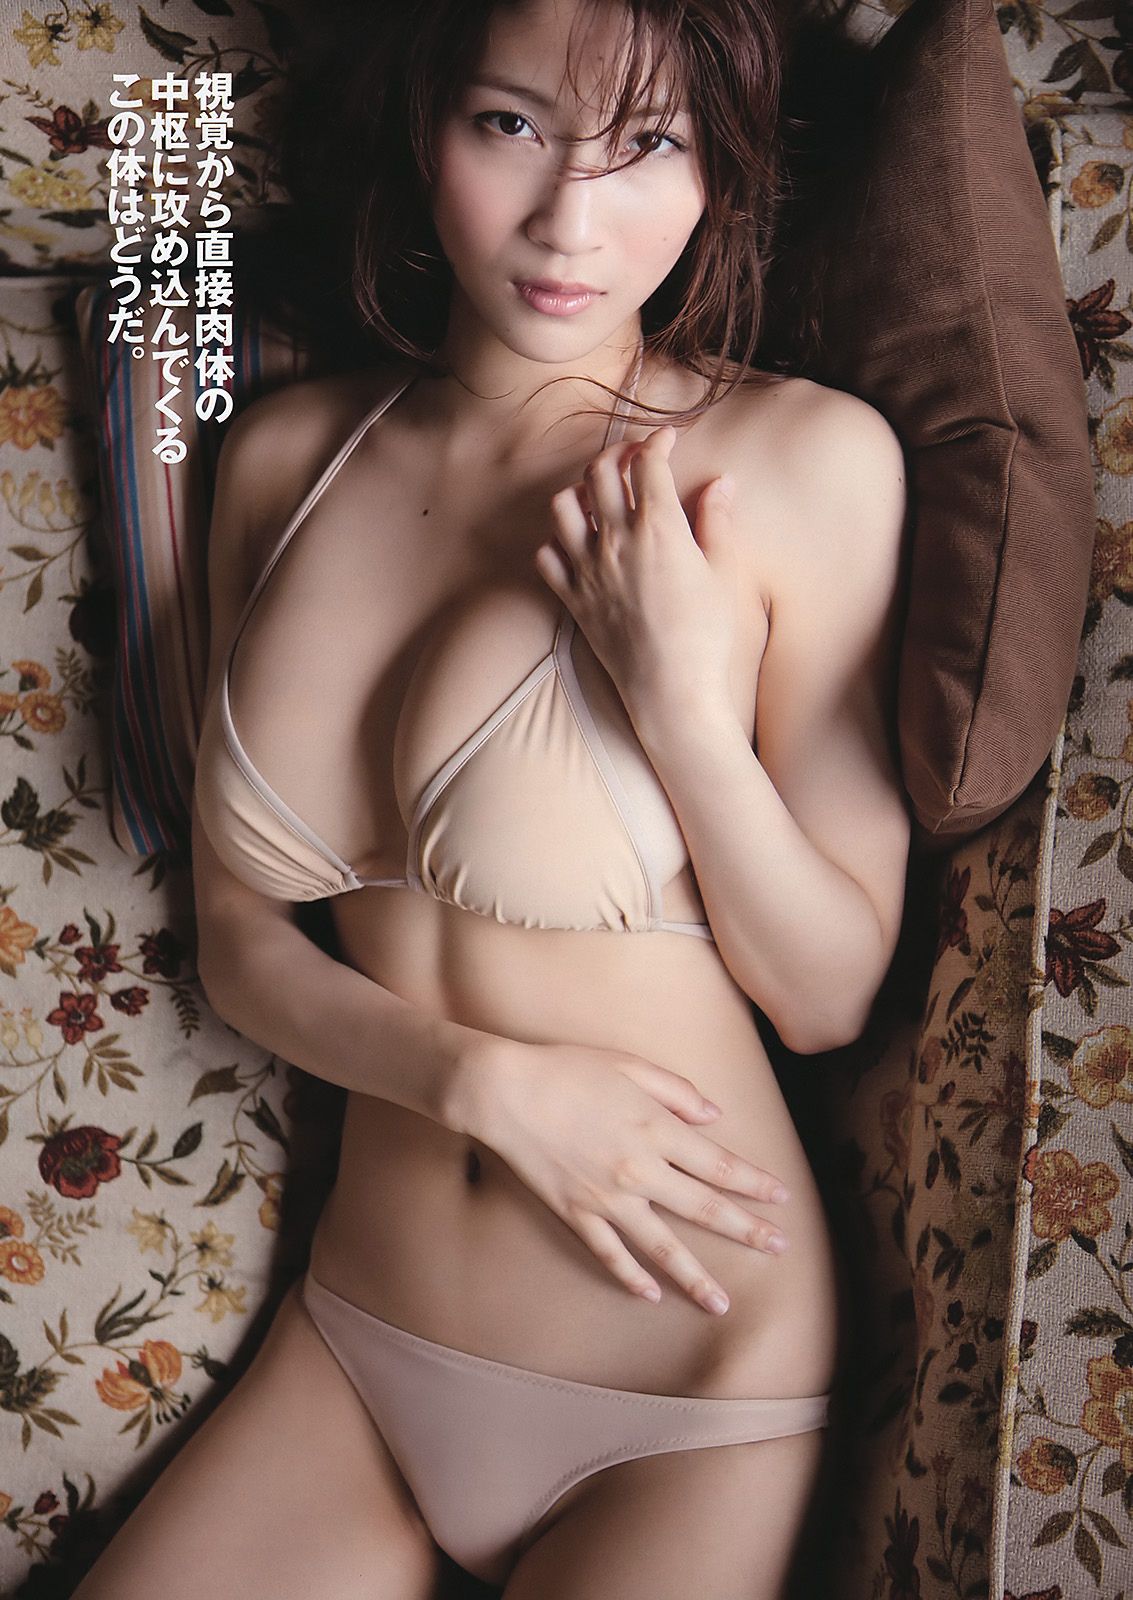 AKB48 Kasai Mikako Kasai Sakura Miyajima Kyoko Hinami Akina Minami Asana Mamoru Hiyori Momose [Weekly Playboy] 2011 No.36 Fotografía Página 31 No.2ce891